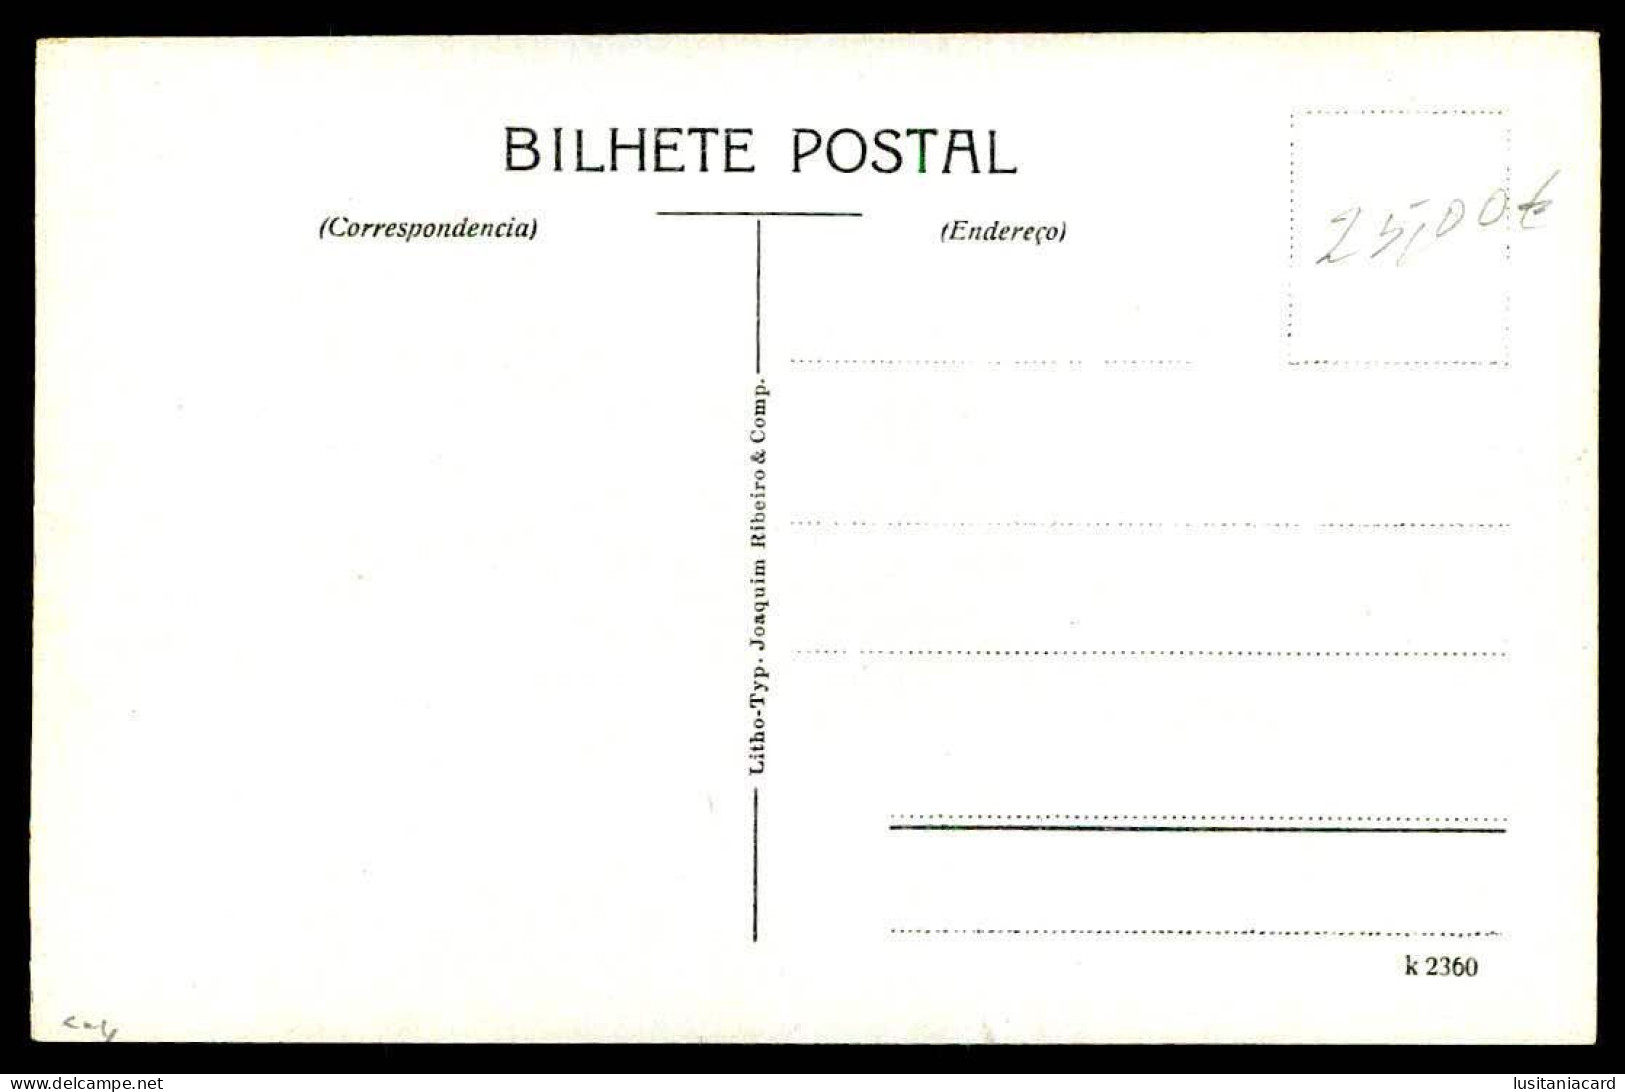 BAHIA - MILITARES QUARTEIS - Quartel General. ( Litho. Typ. Joaquim Ribeiro & Comp. Nº K 2360)  Carte Postale - Salvador De Bahia